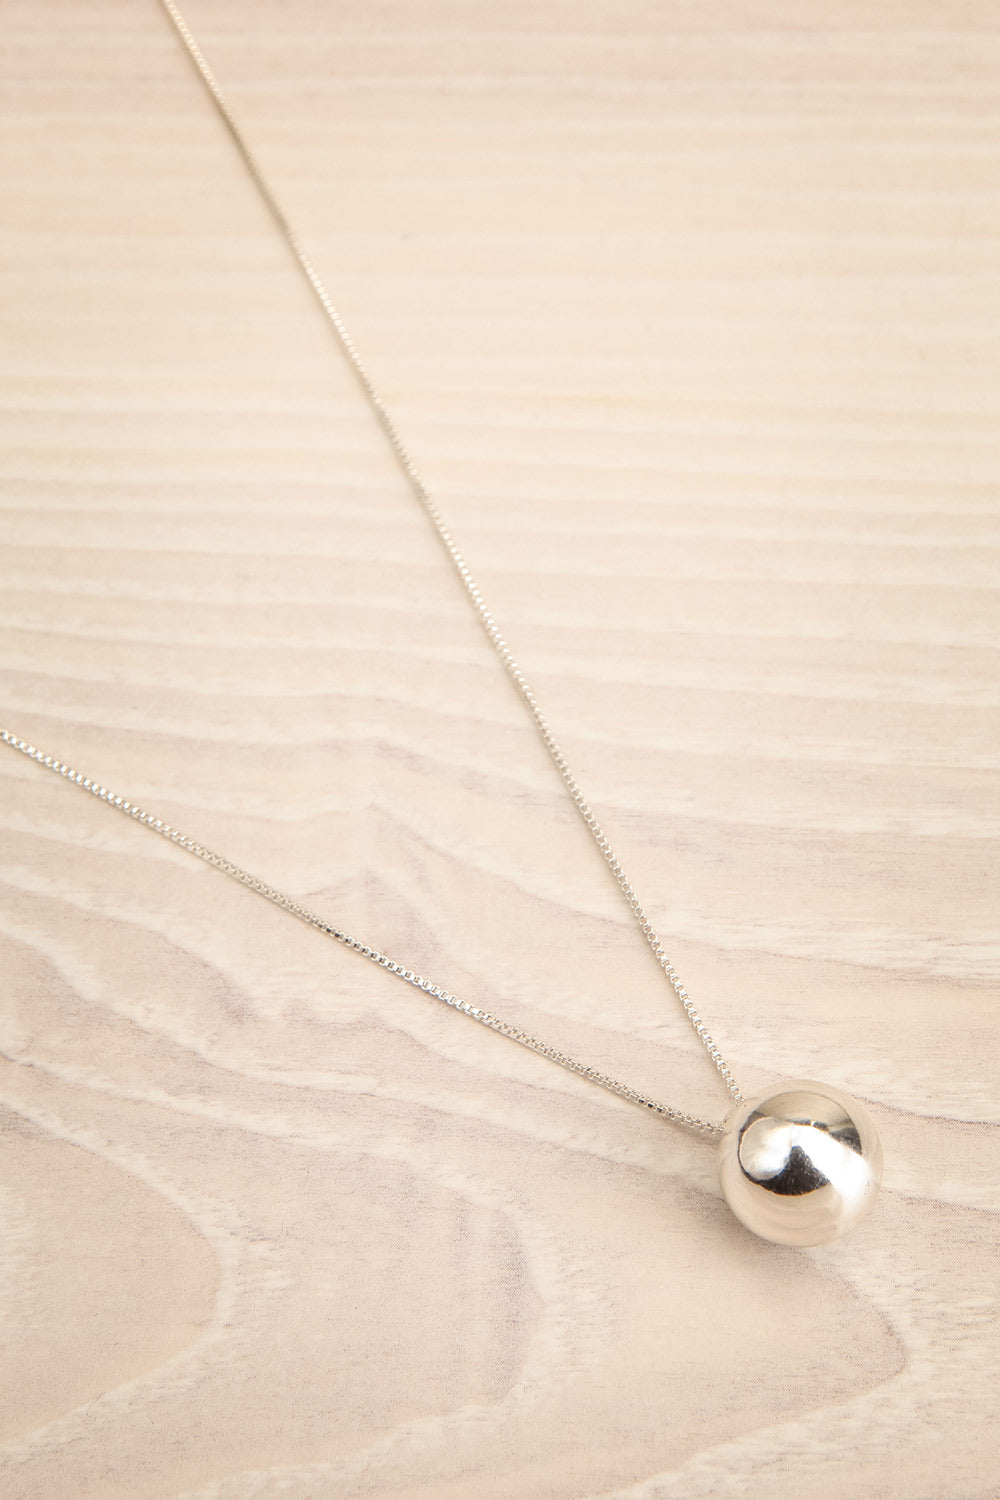 Ernae Silver Adjustable Necklace w/ Ball Pendant | La petite garçonne flat view